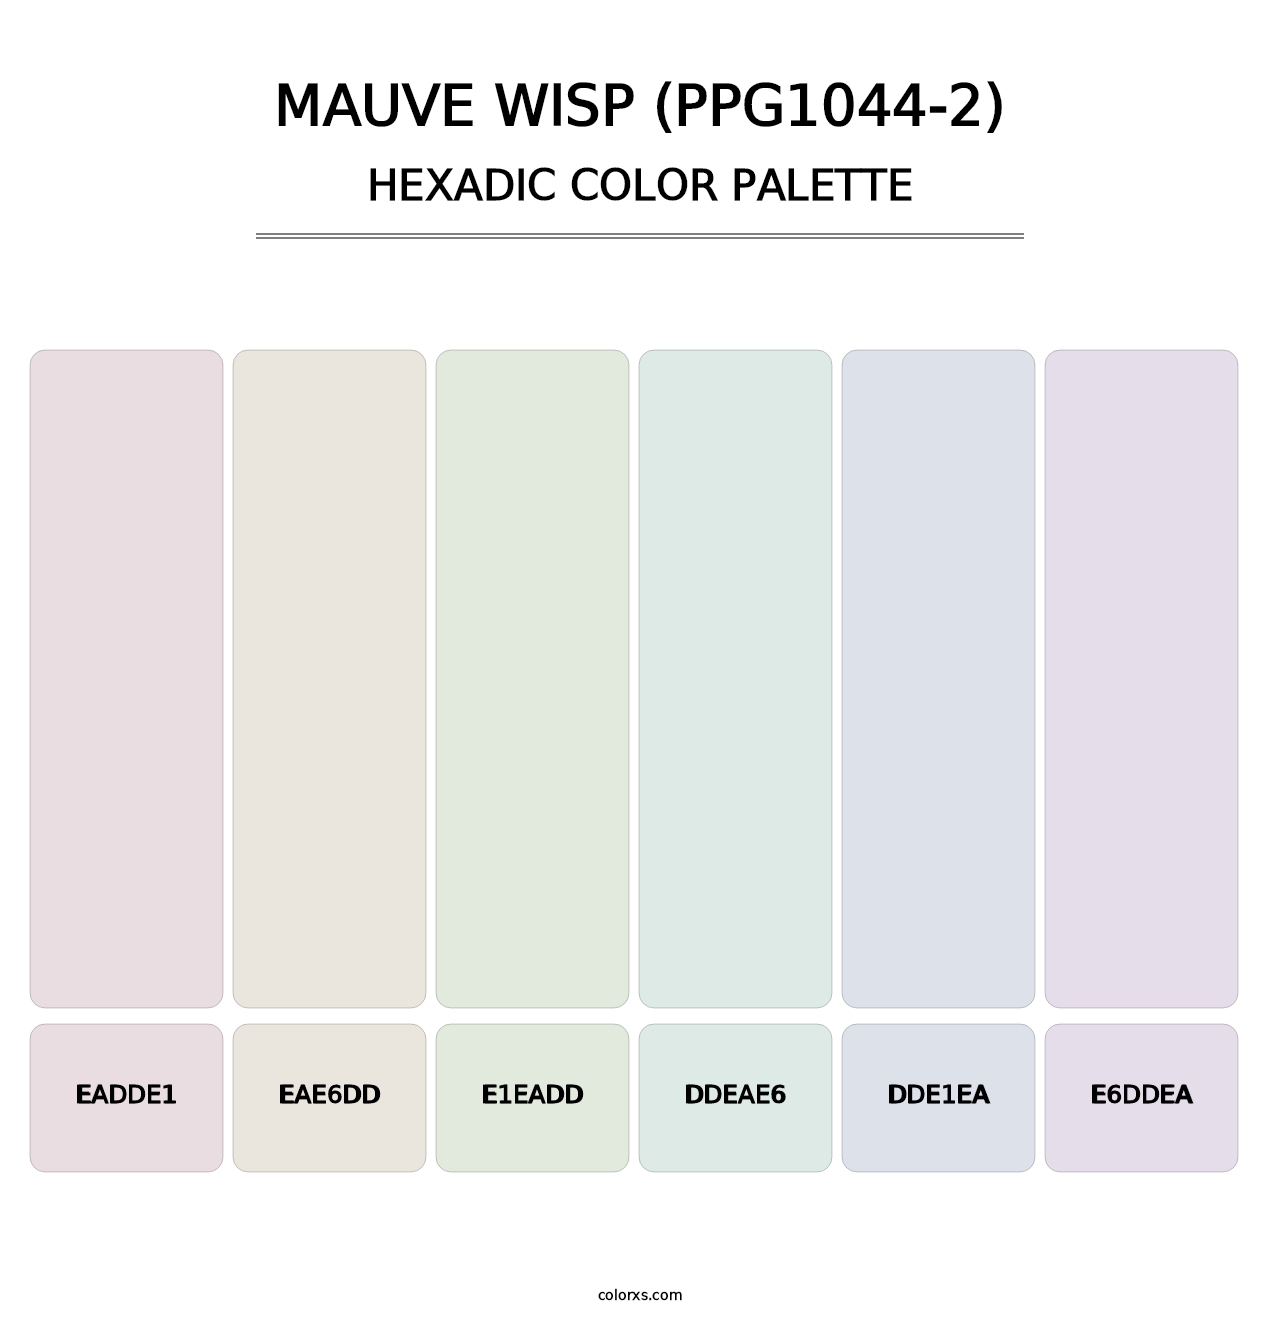 Mauve Wisp (PPG1044-2) - Hexadic Color Palette